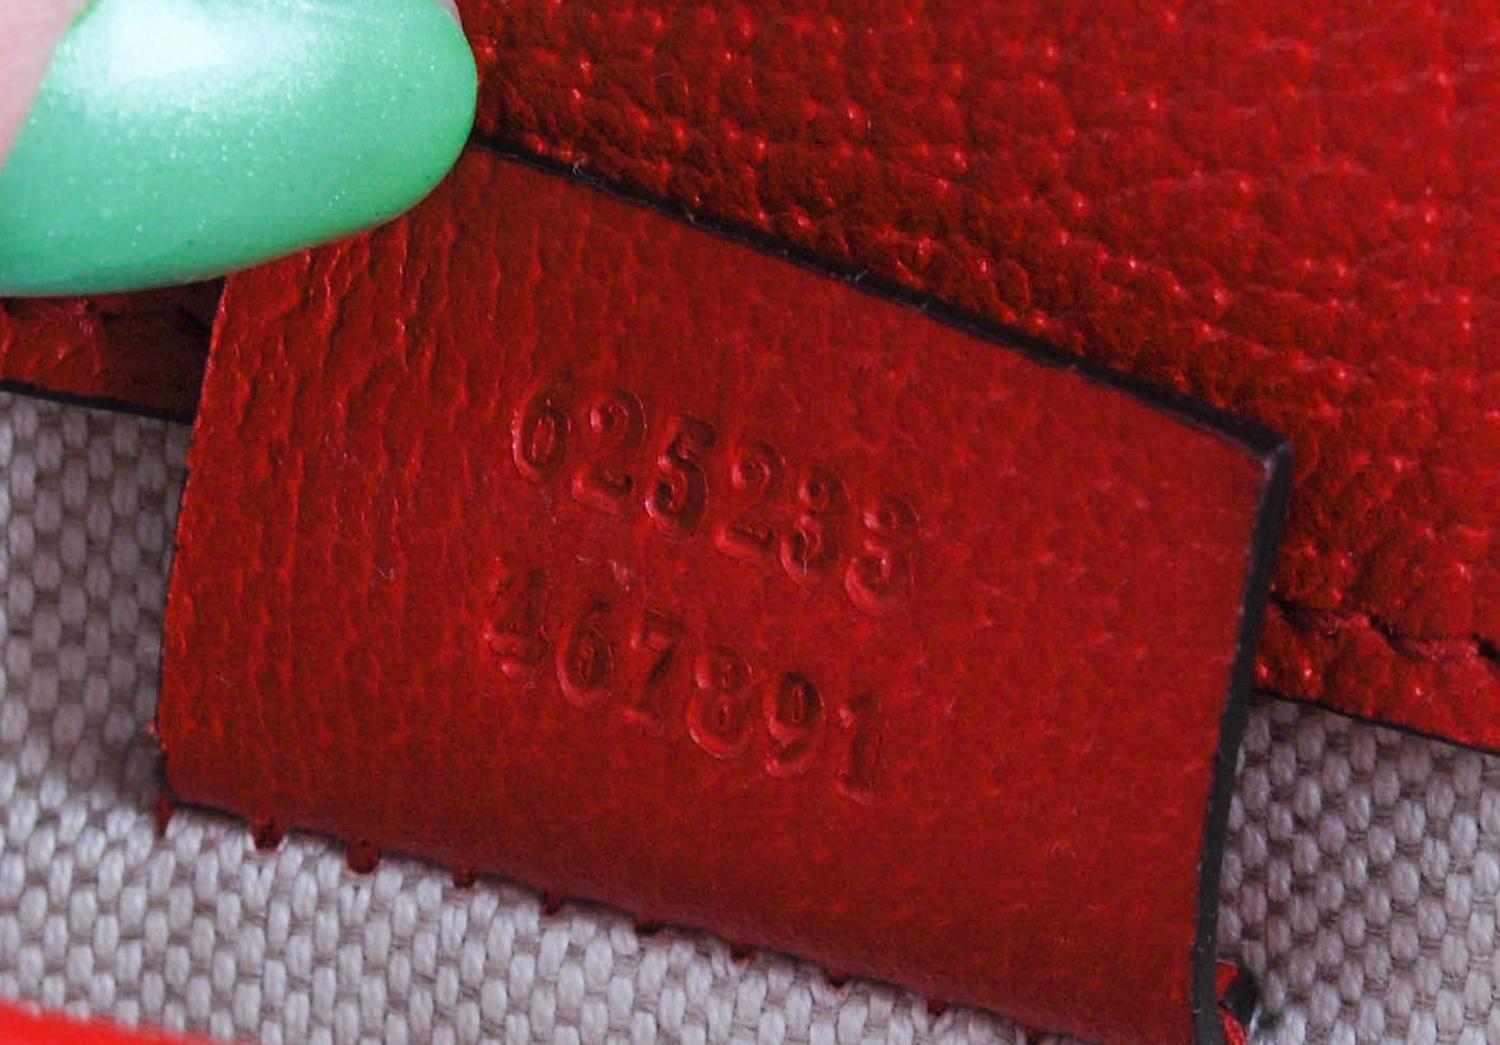 L'article mis en vente est 100% authentique Gucci Monogram Women Waist Bag S044
Couleur : marron/rouge
(La couleur réelle peut varier légèrement en raison de l'interprétation individuelle de l'écran de l'ordinateur).
Matière : Détails du cuir
Ce sac